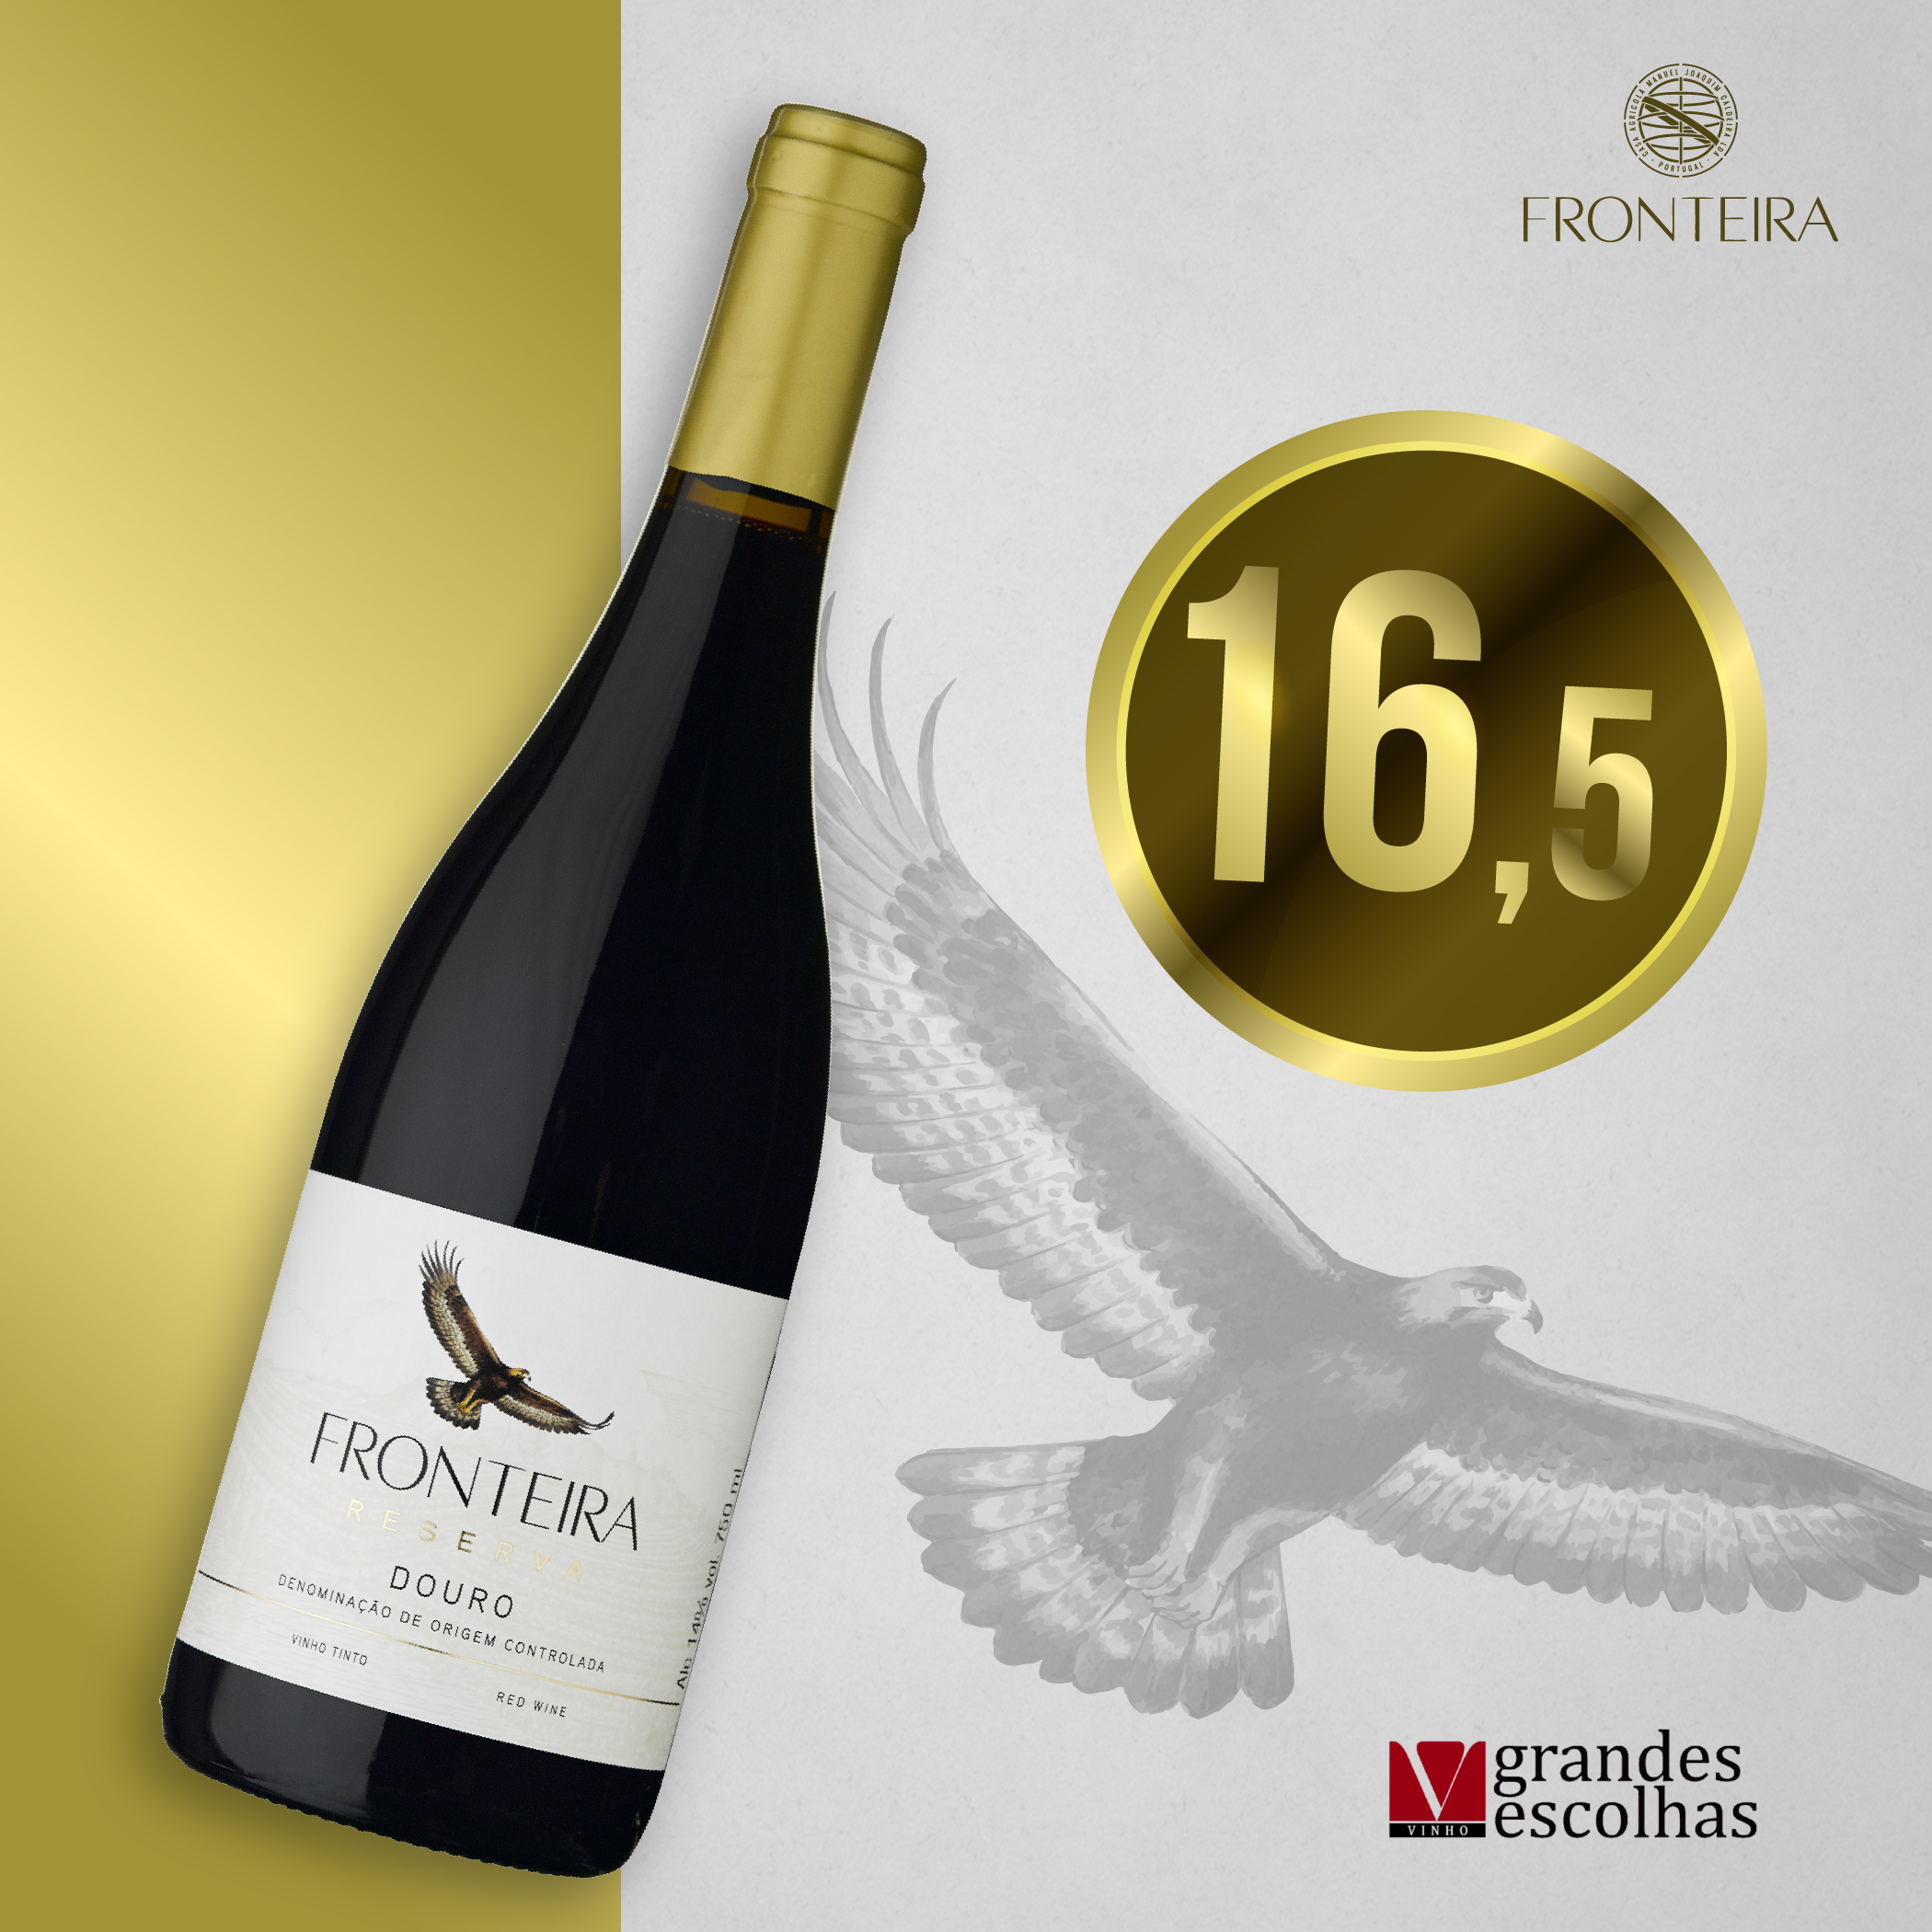 Grandes Escolhas - Fronteira Tinto recebe cotação de 16,5 pela Vinho Grandes Escolhas